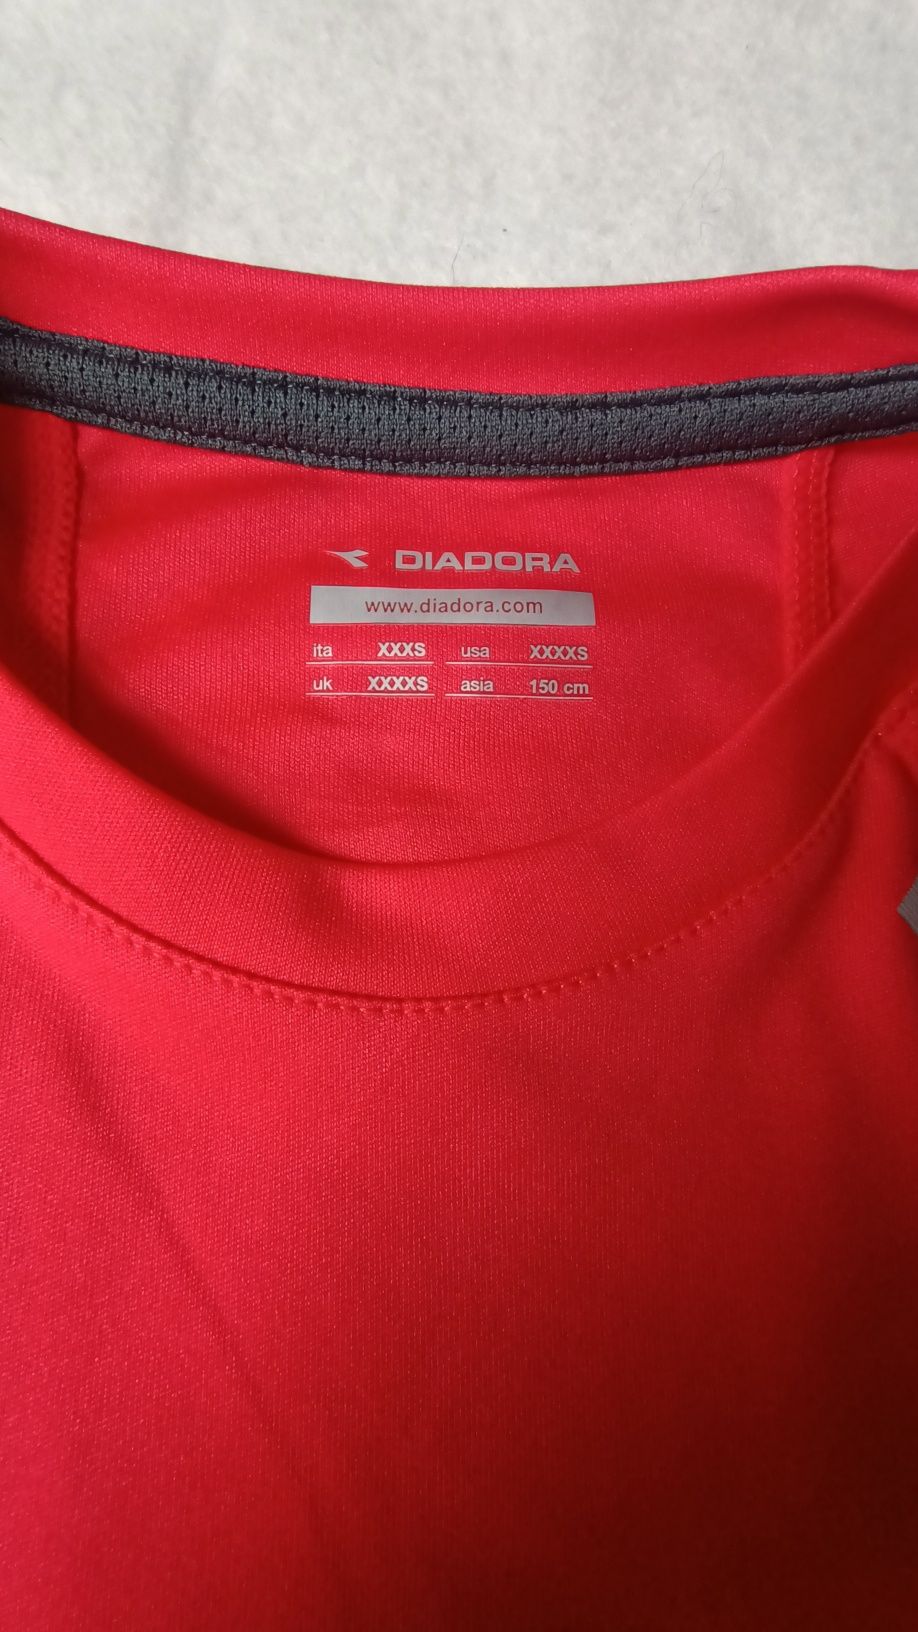 Dziecięca koszulka sportowa, rozmiar xxxs, Diadora